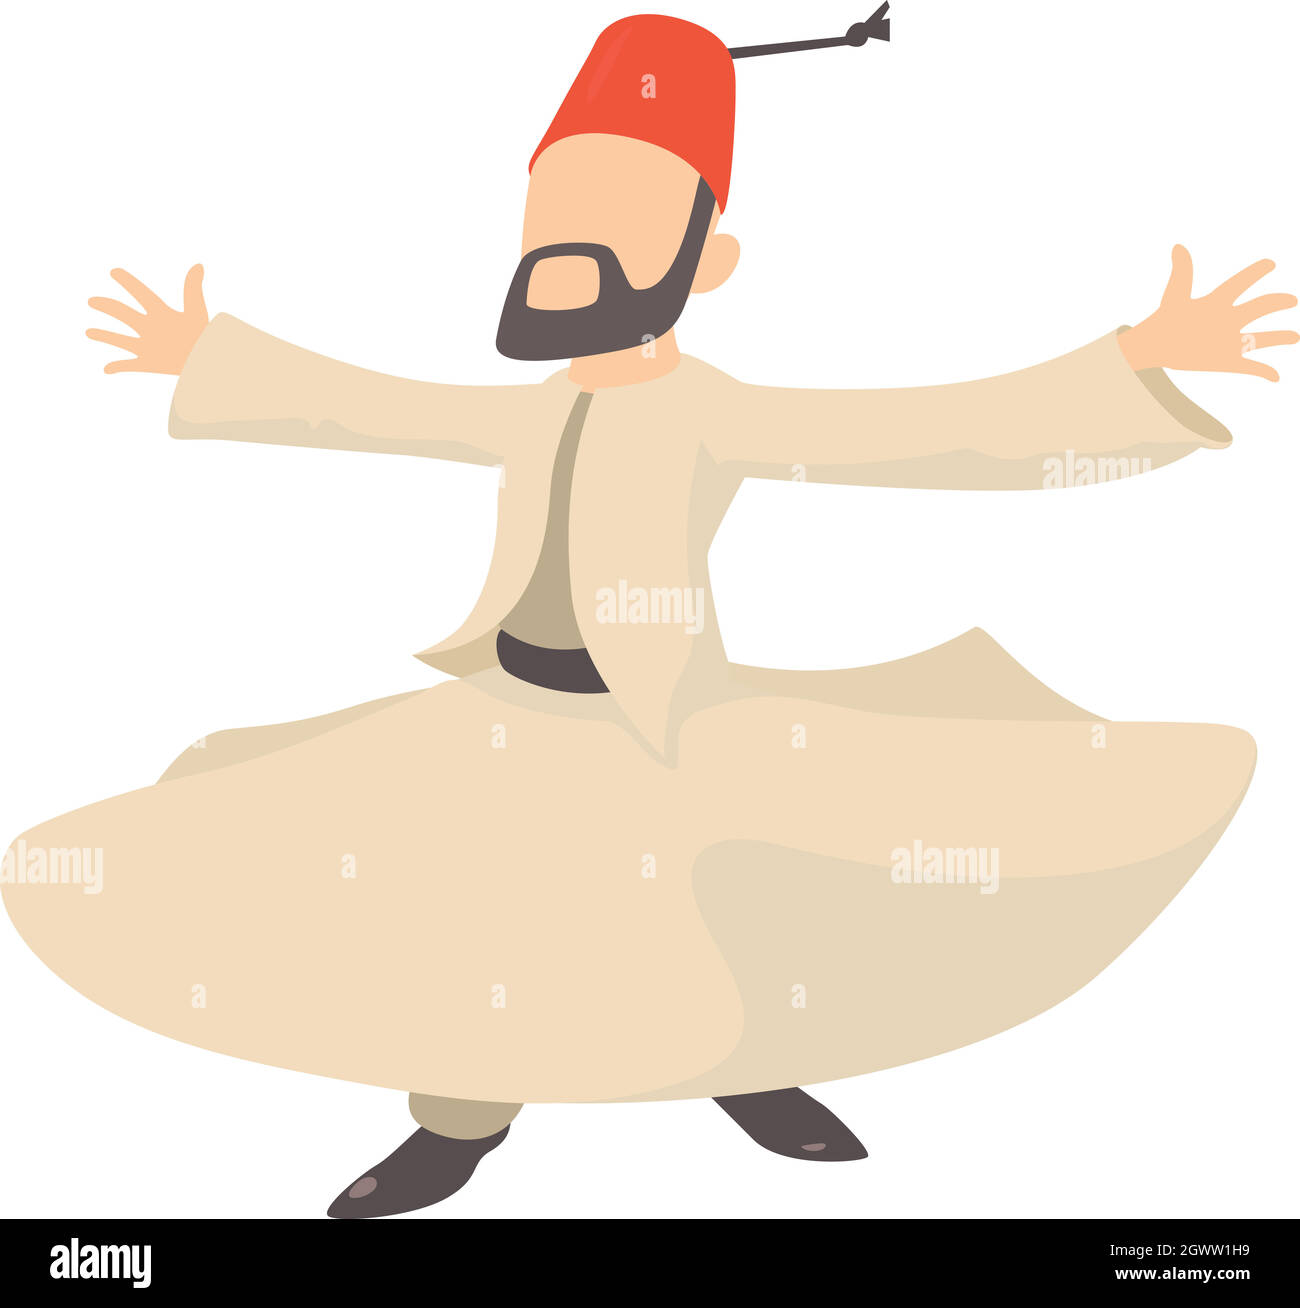 L'homme arabe, l'icône de style cartoon Illustration de Vecteur